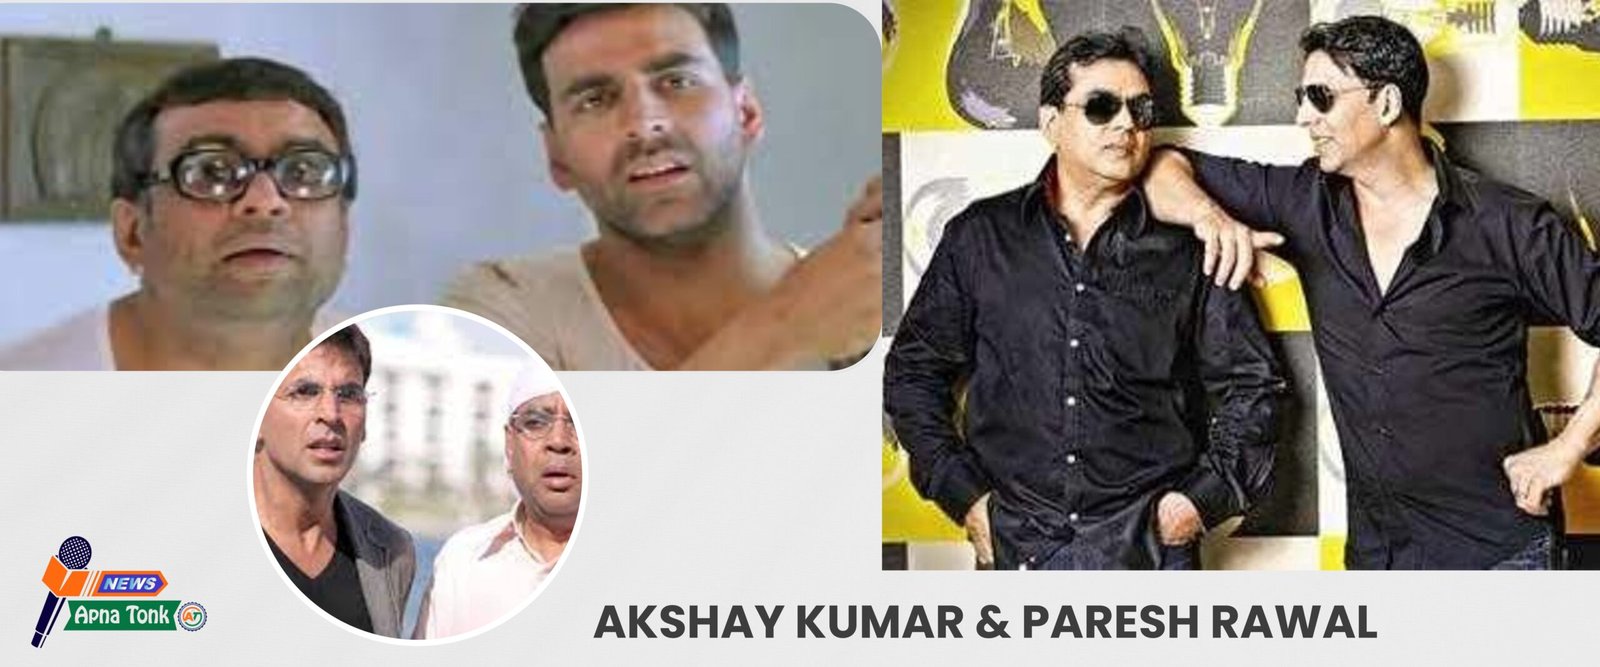 अक्षय कुमार (akshay kumar) और परेश रावल की 7 सर्वश्रेष्ठ फिल्में जिन्हें आप हमेशा देखना चाहेंगे –